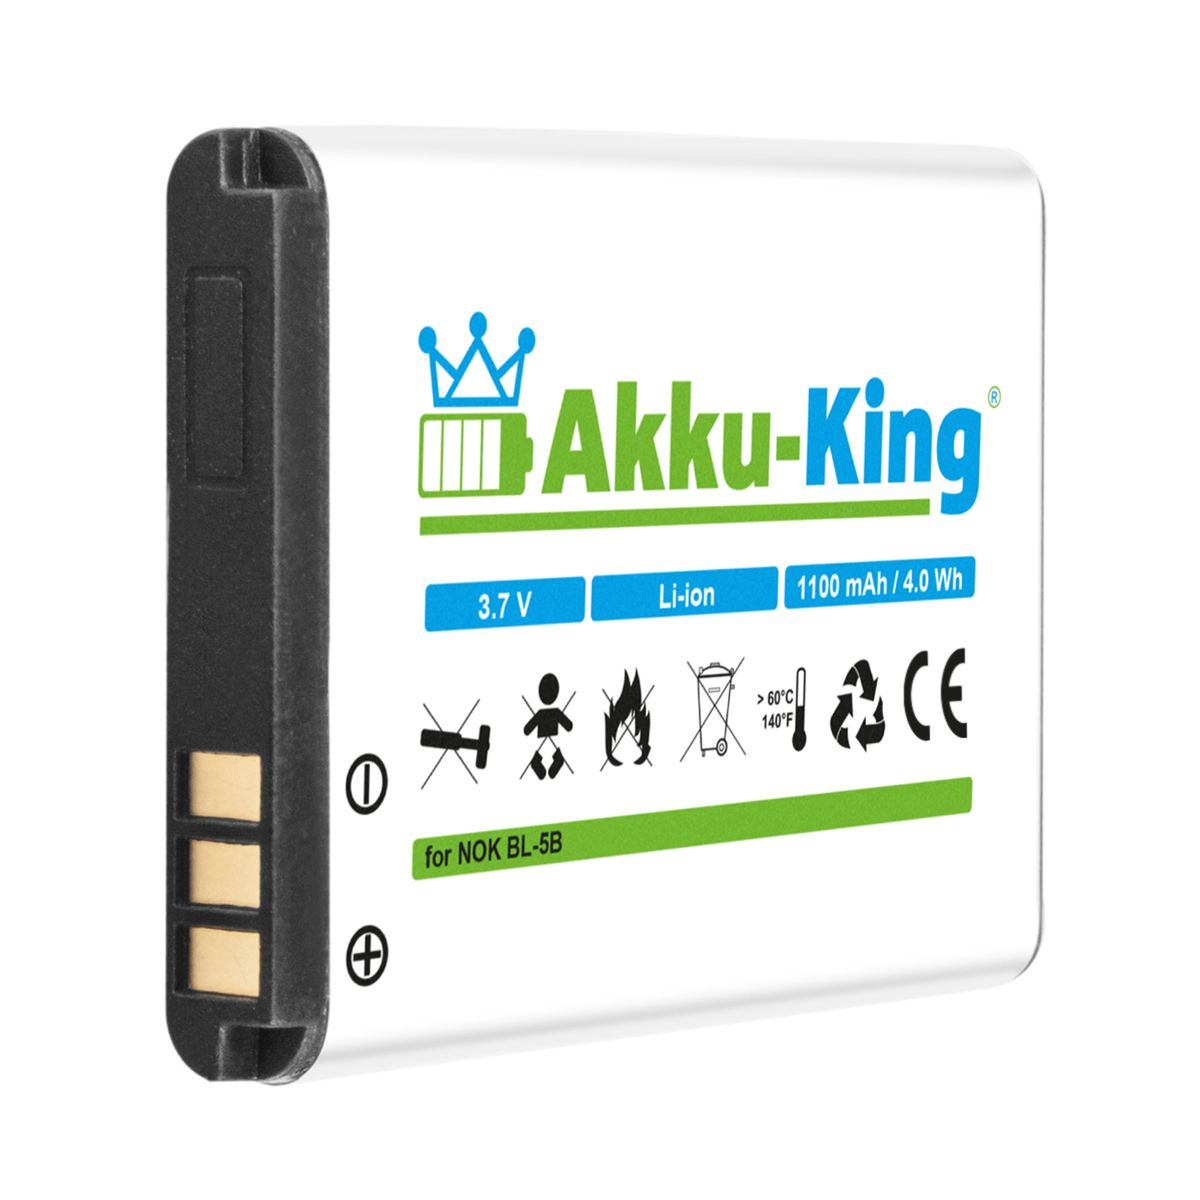 AKKU-KING Akku kompatibel Volt, BL-5B Handy-Akku, mit Nokia 3.7 1100mAh Li-Ion